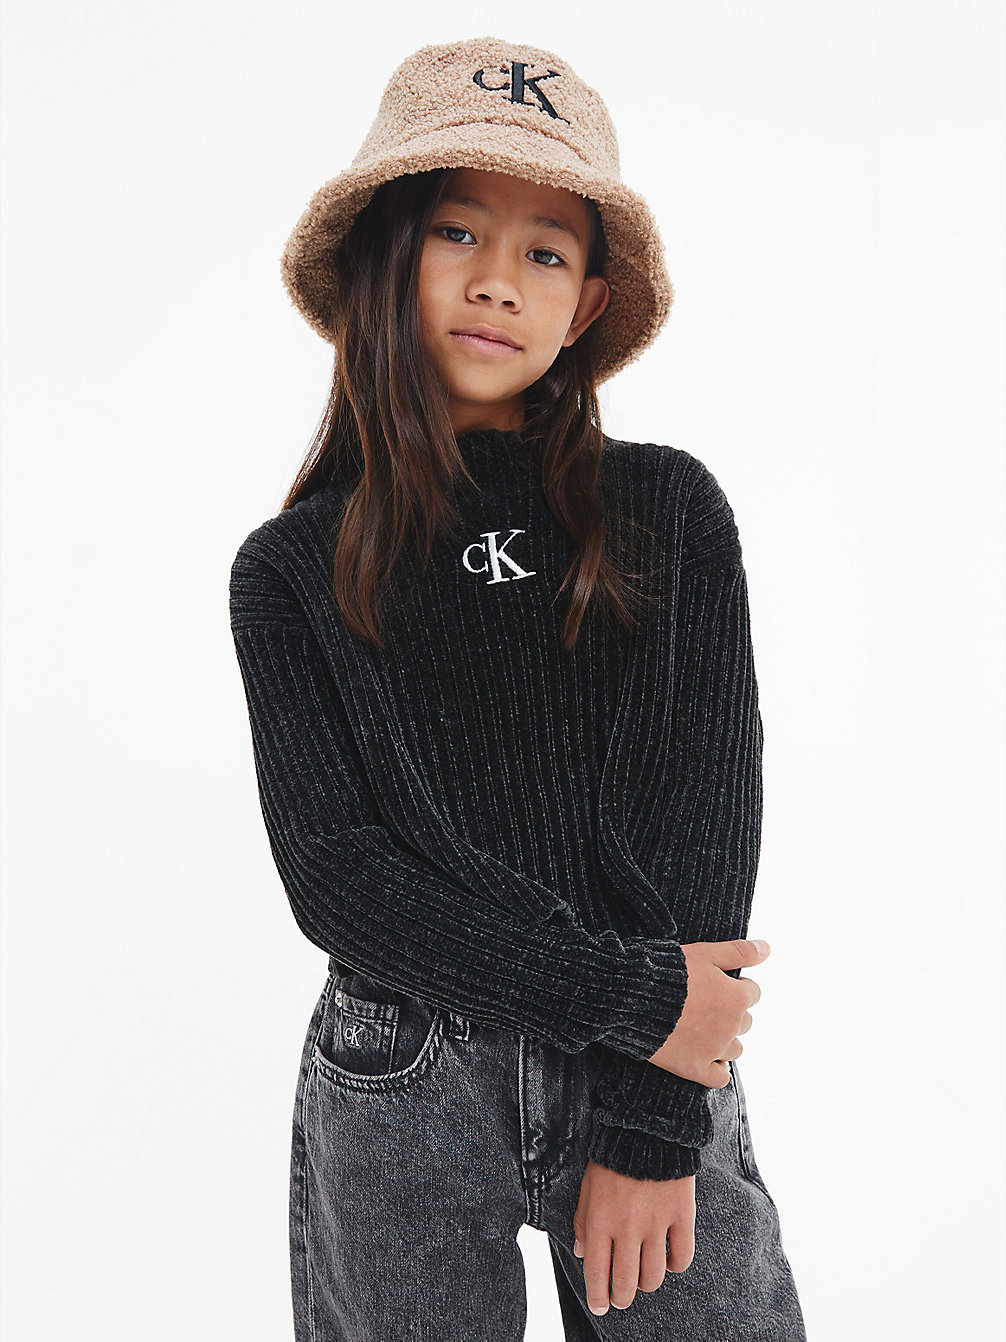 CK BLACK Chenille Jumper undefined girls Calvin Klein